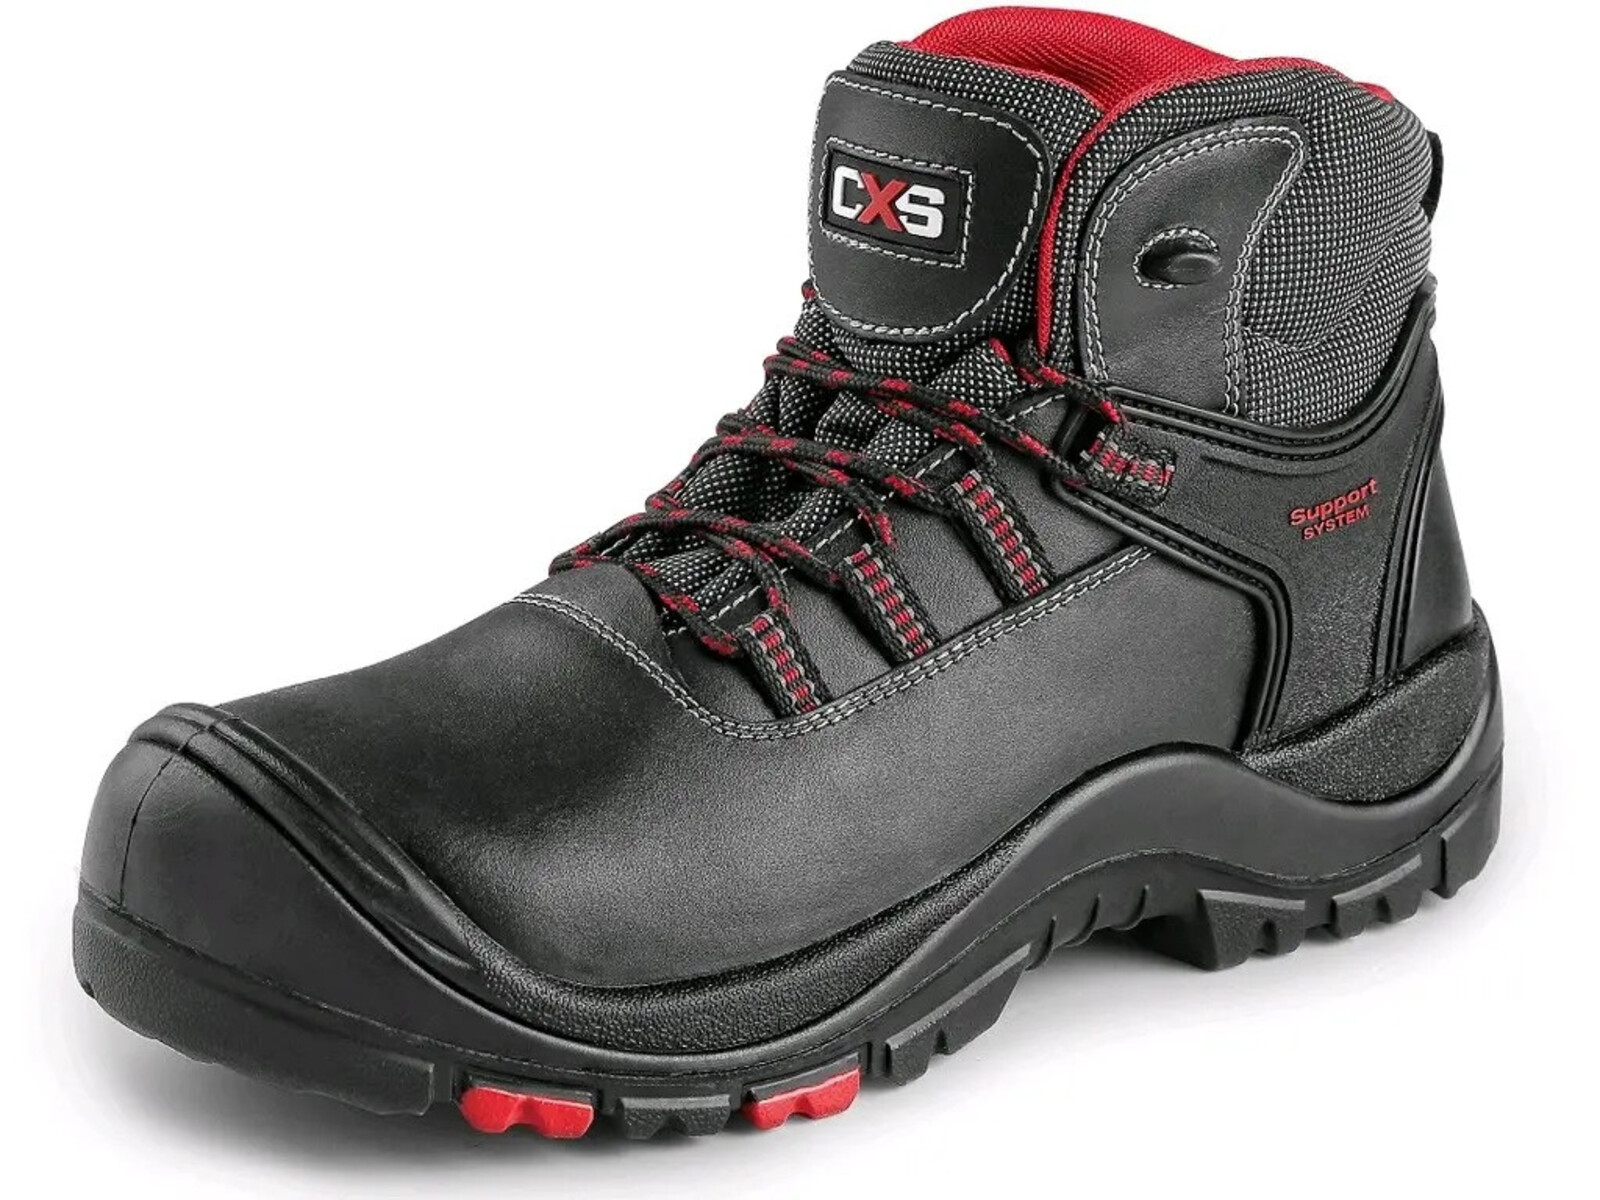 Bezpečnostná členková obuv CXS Rock Granite S3 SRC HRO MF - veľkosť: 43, farba: čierna/červená